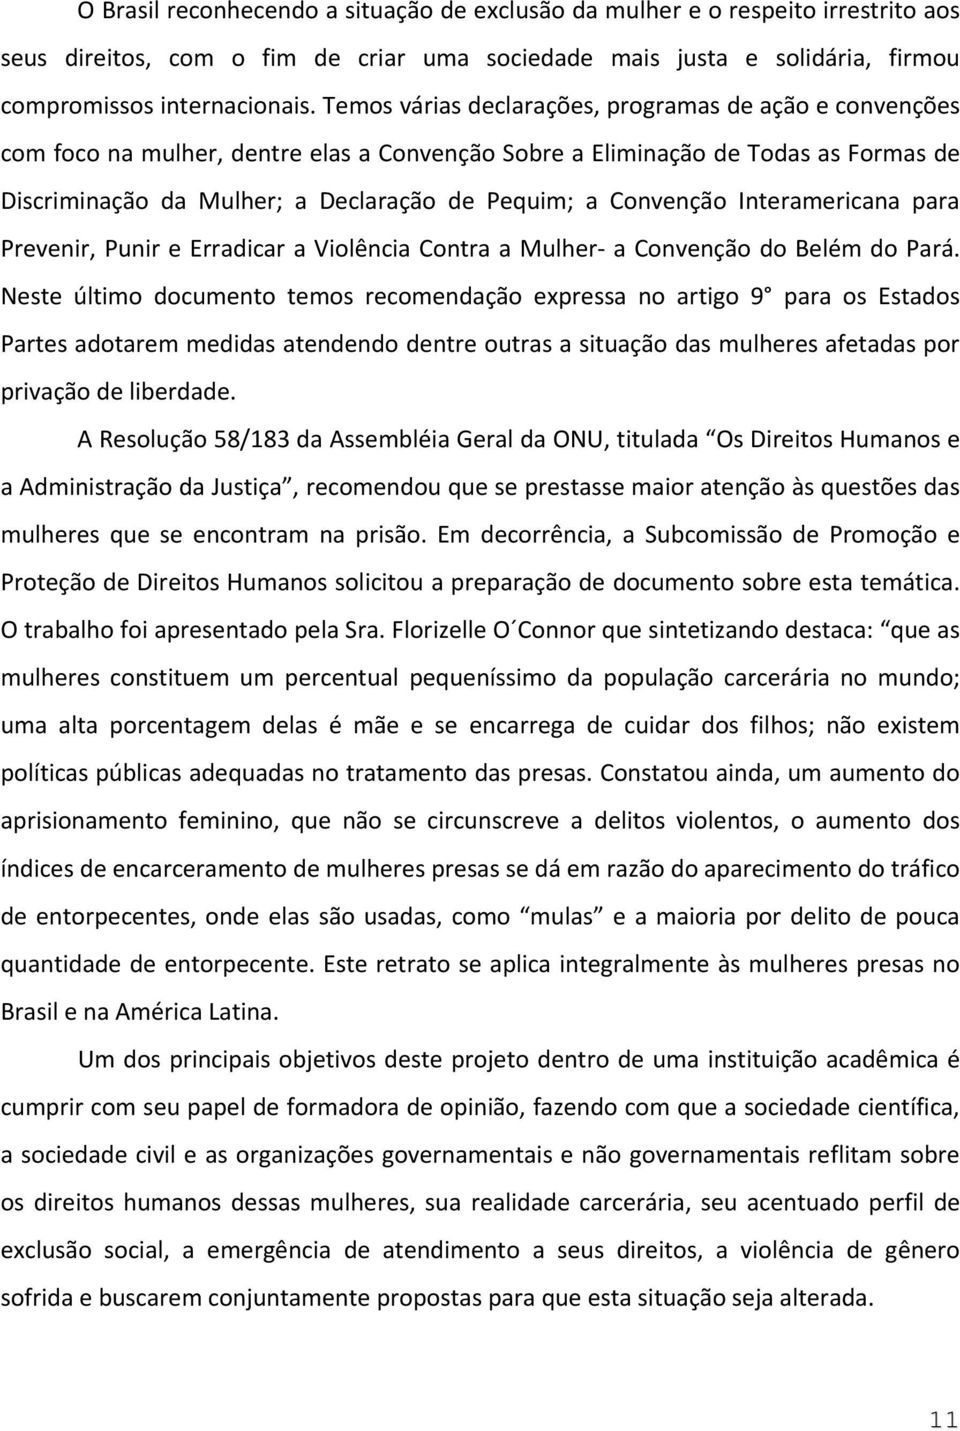 Convenção Interamericana para Prevenir, Punir e Erradicar a Violência Contra a Mulher a Convenção do Belém do Pará.